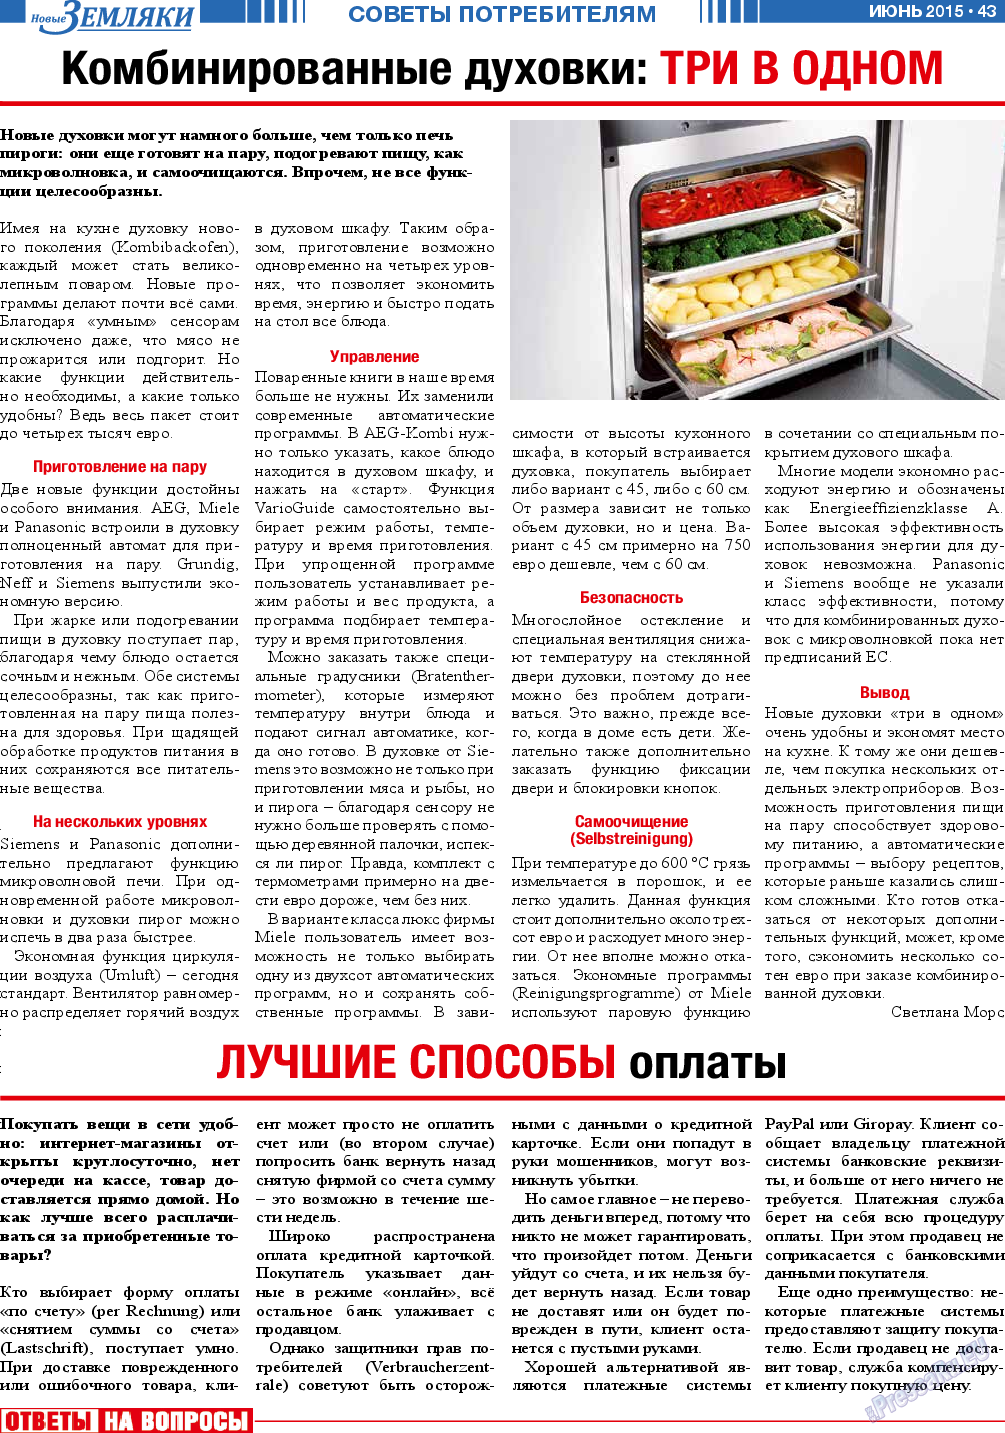 Новые Земляки, газета. 2015 №6 стр.43